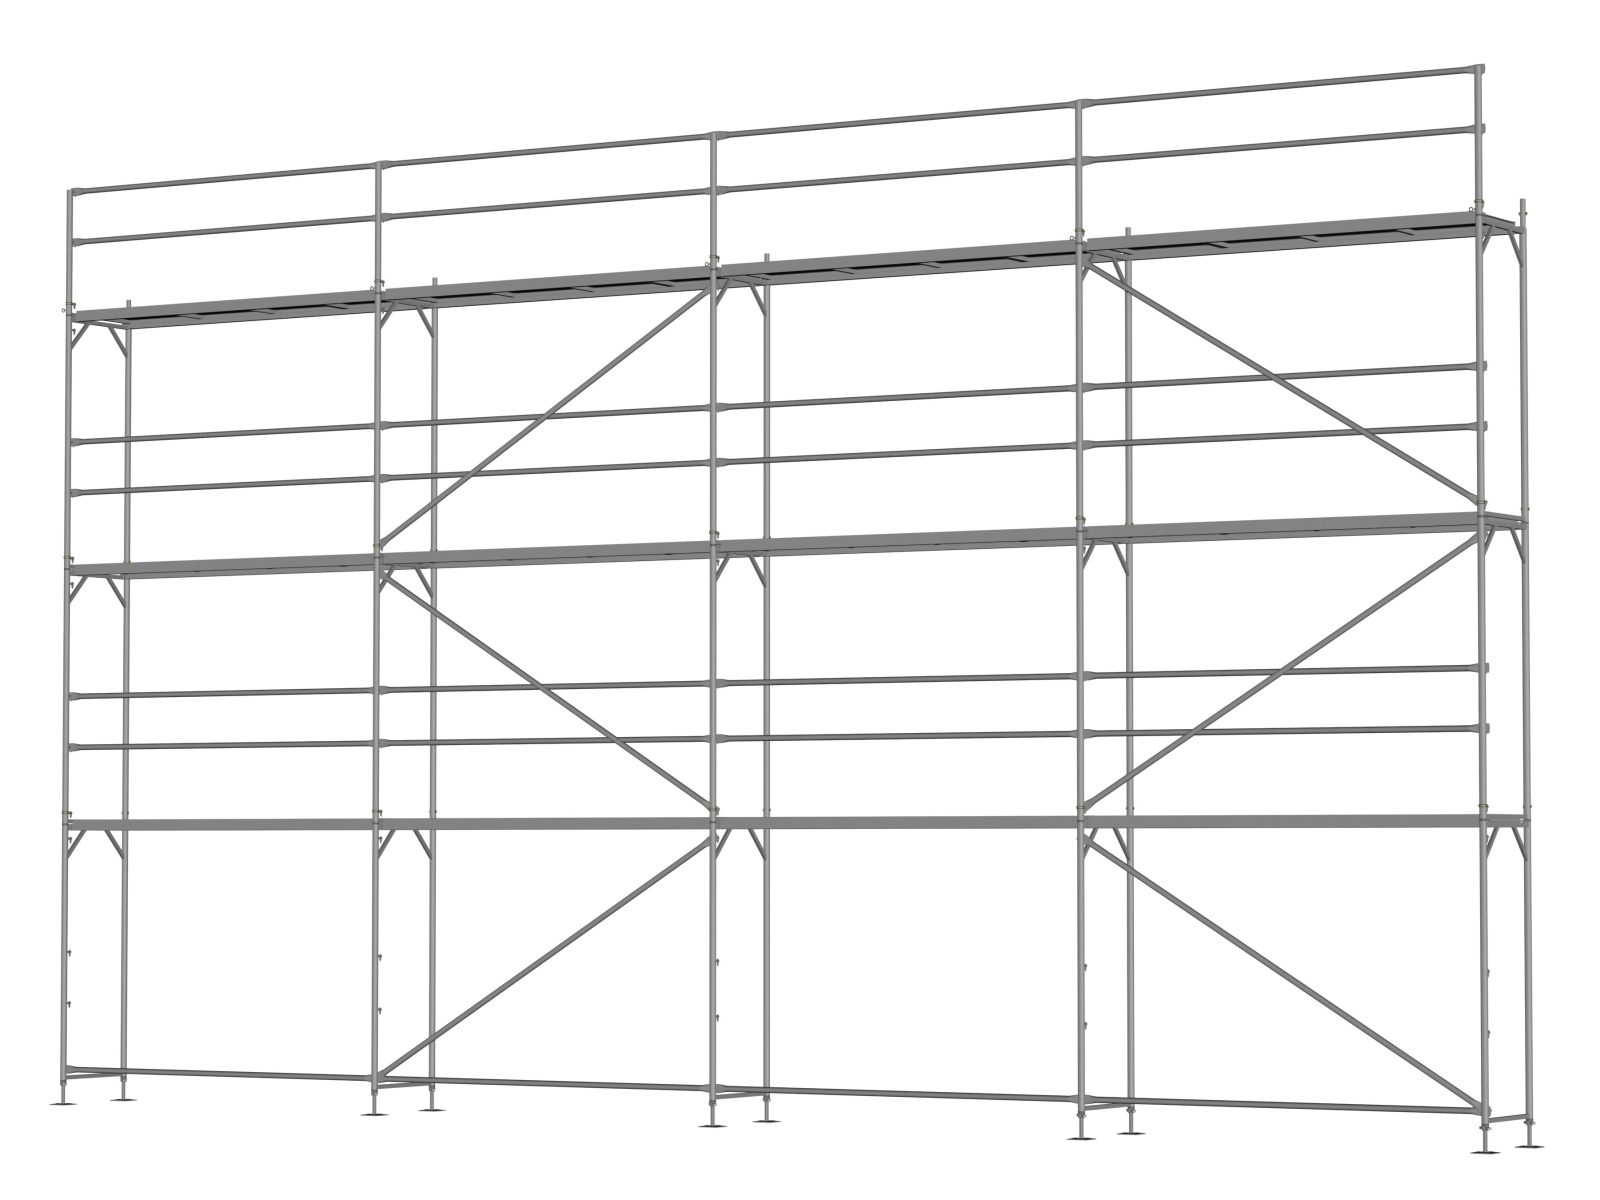 Alu Traufseitengerüst 96 qm - 3,0 m Felder - 12 m lang - 8 m Arbeitshöhe, Basisgerüst